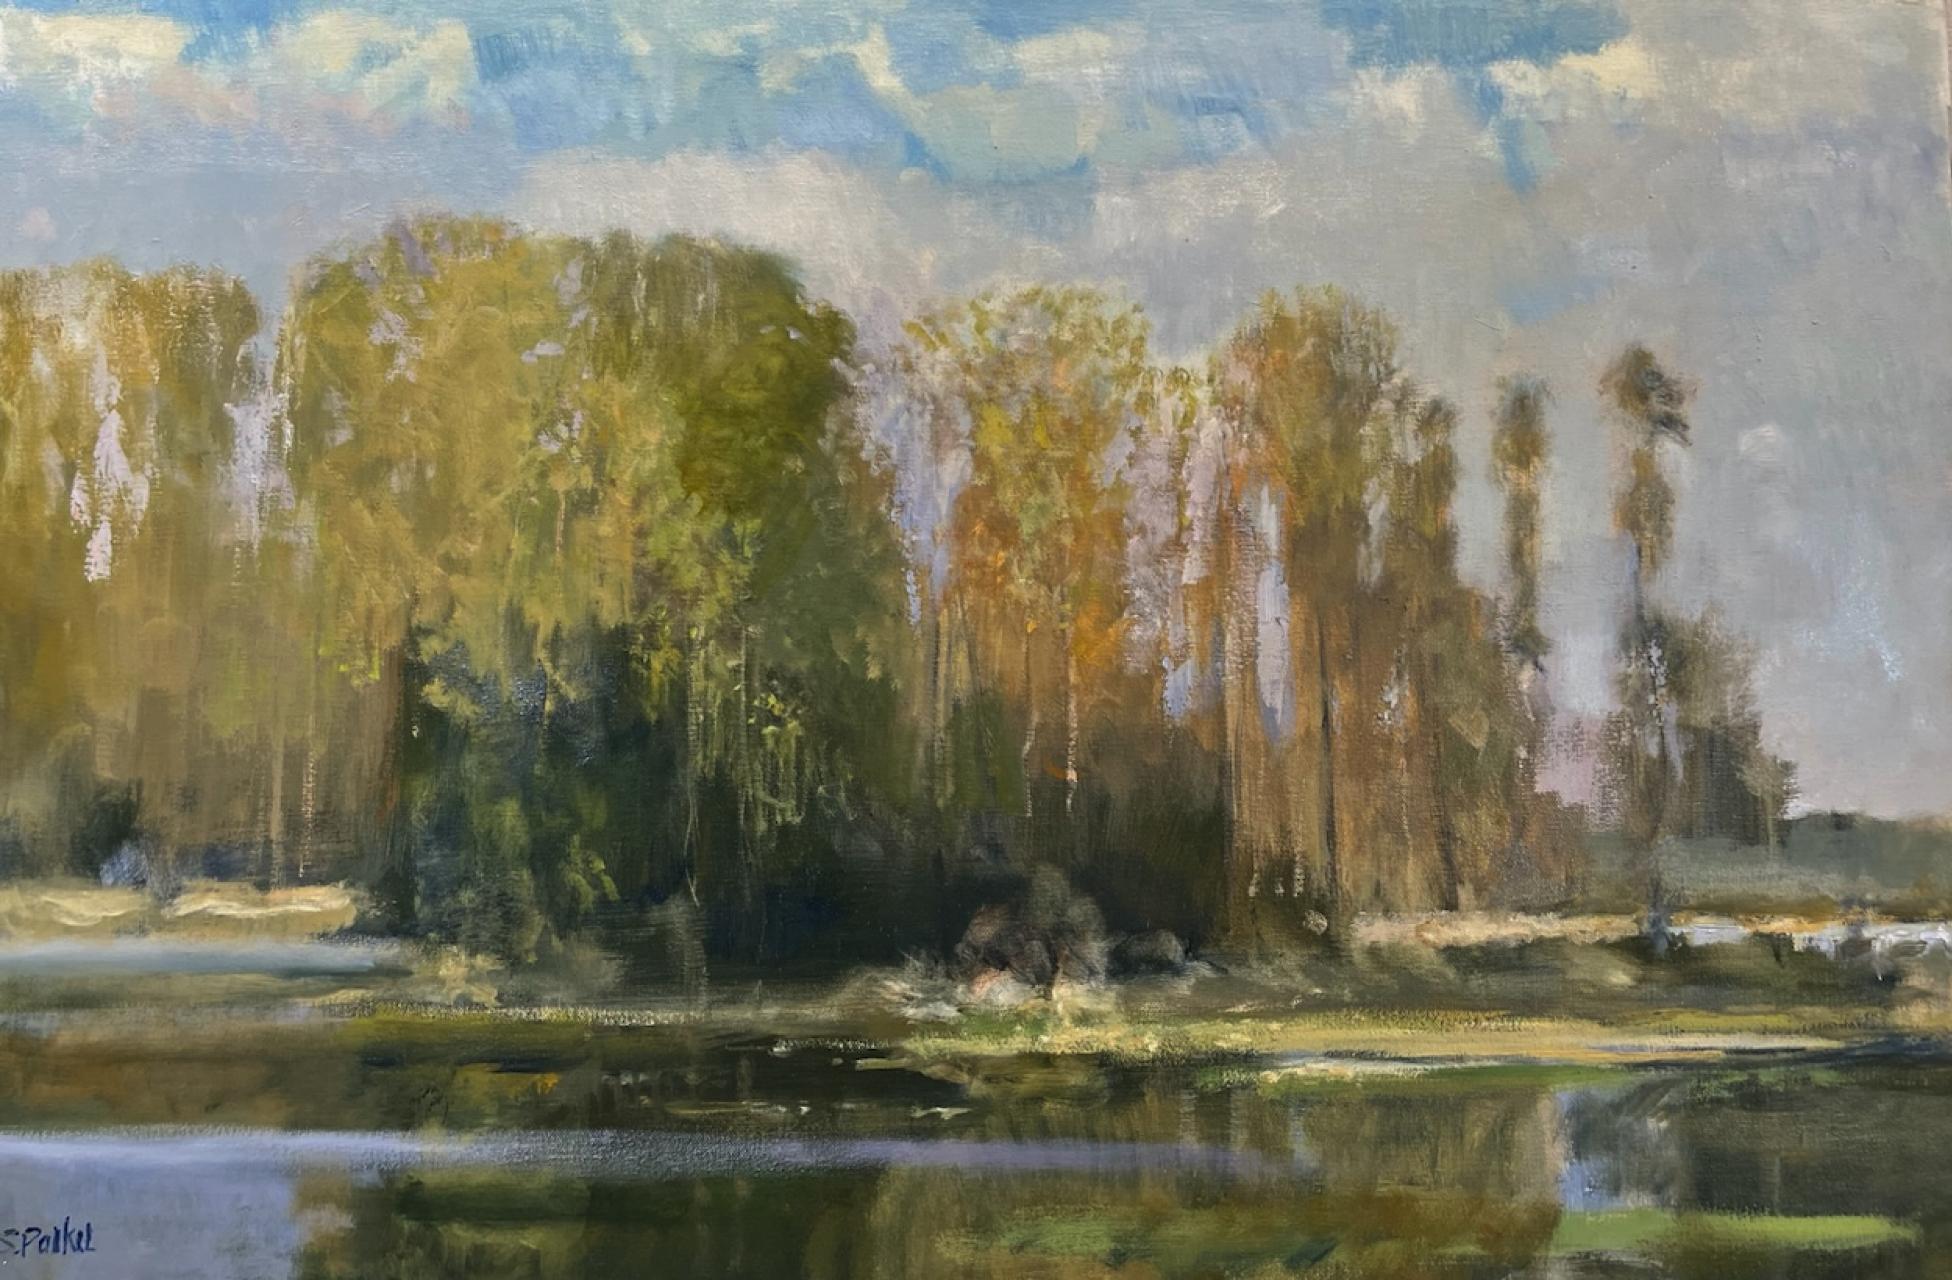 Landscape Painting Steve Parker - Peinture à l'huile impressionniste américaine du début de la période Spring Cove Lake Conroe Texas Landscape 